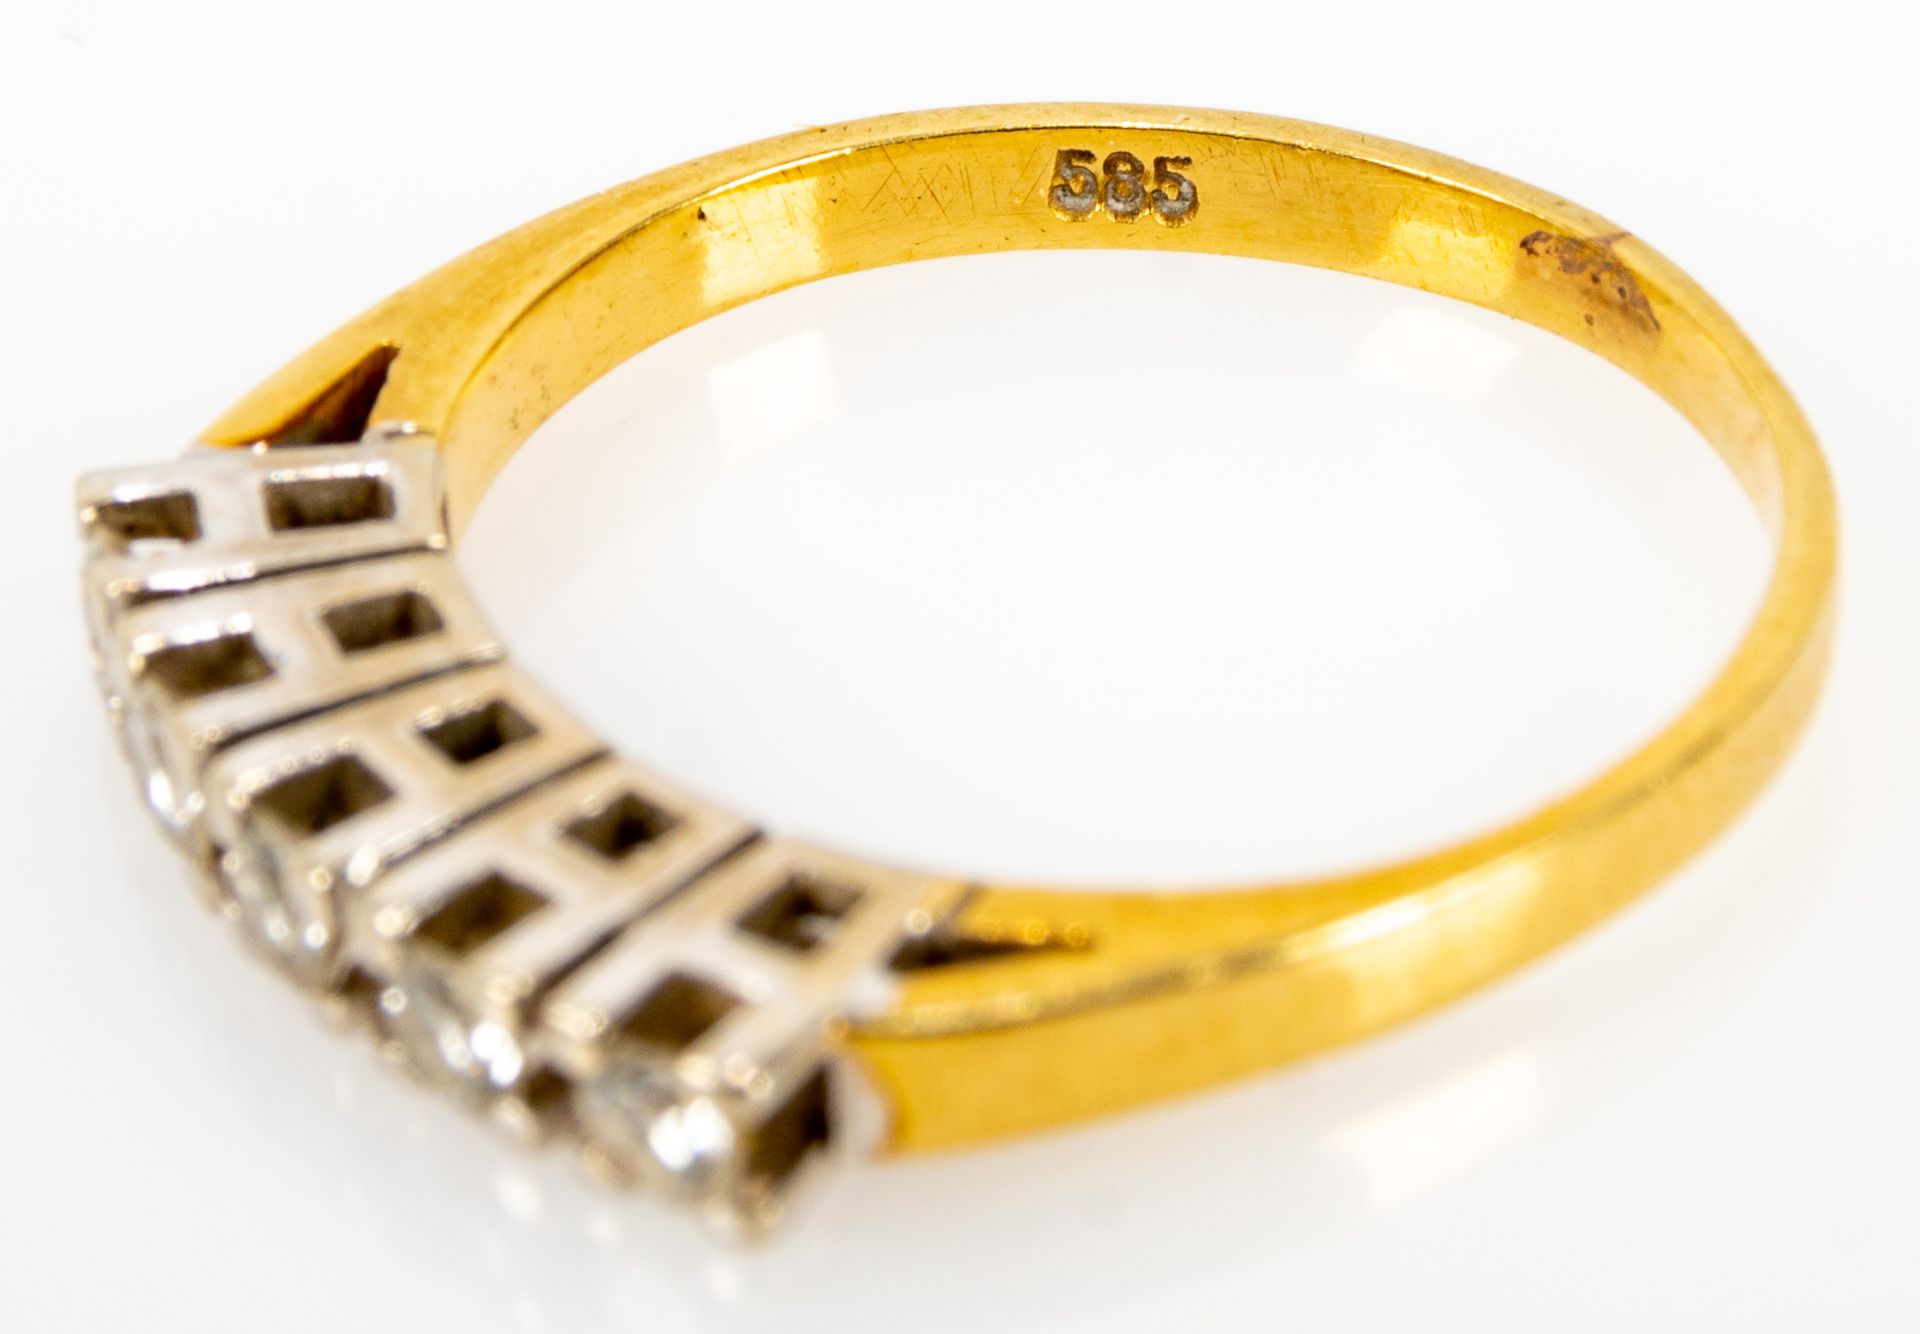 585er Gelbgold Beisteckring mit 5 Diamanten besetzt, Ringinnendurchmesser ca. 17 mm, ca. 3 gr. - Image 5 of 5